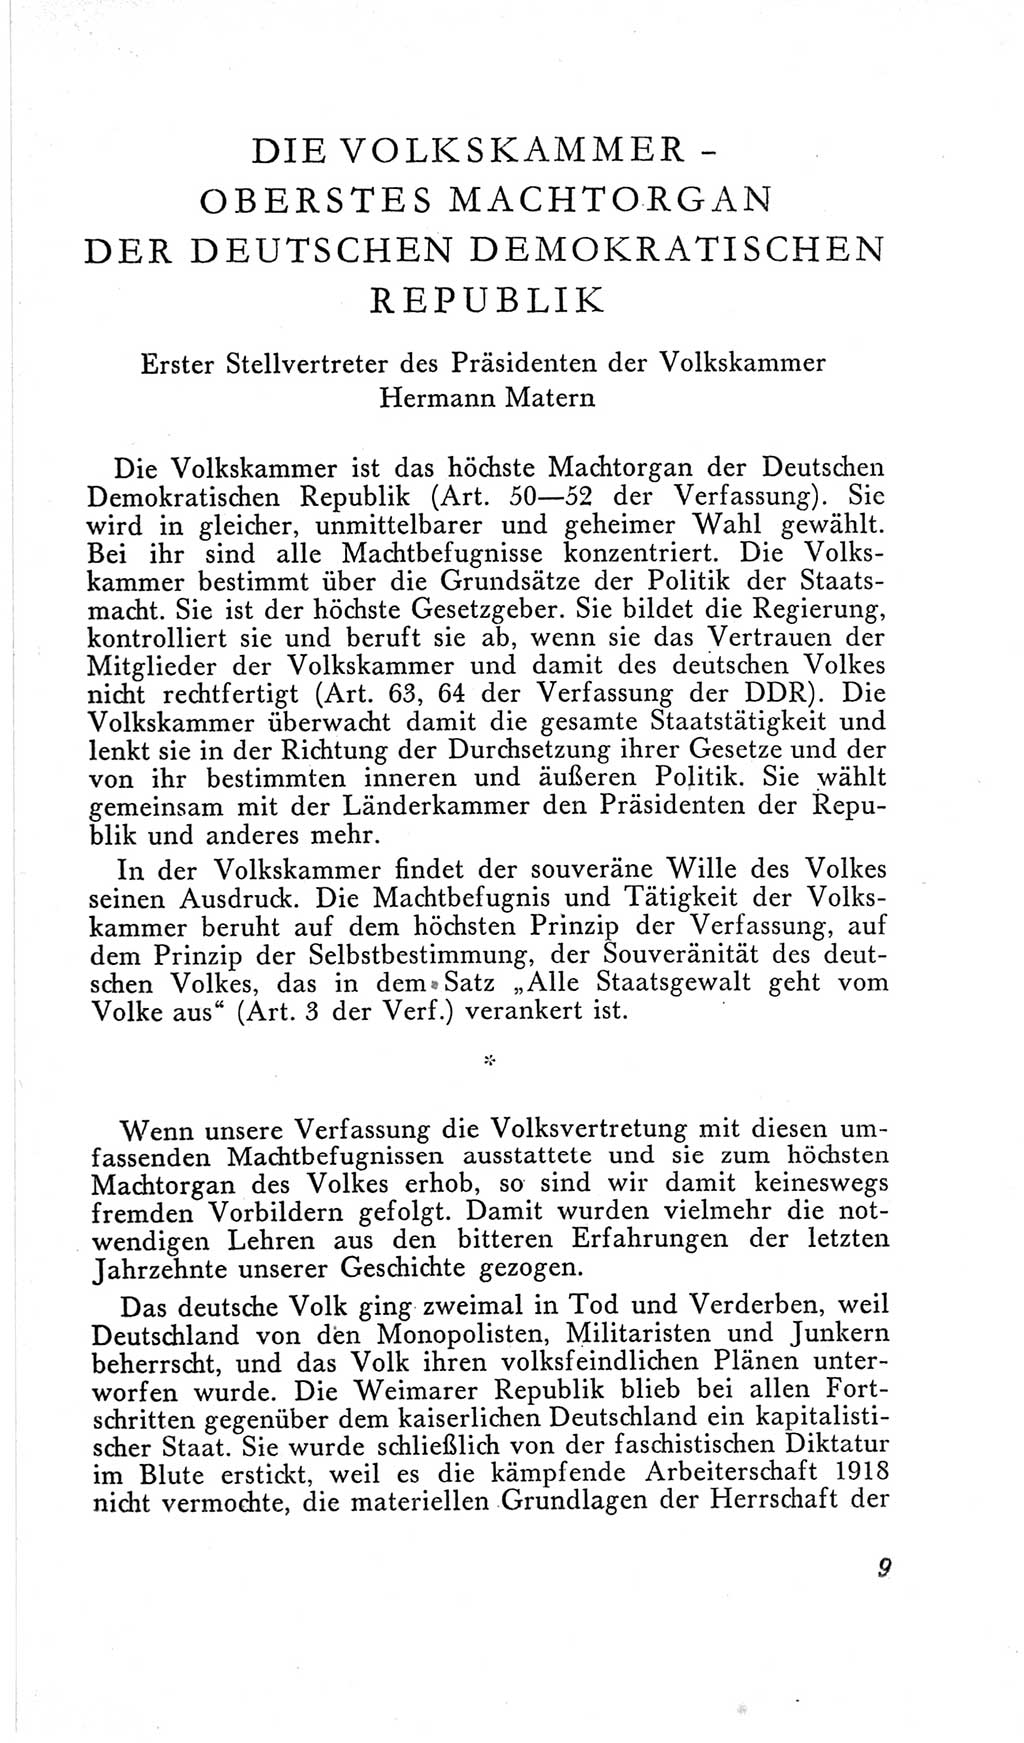 Handbuch der Volkskammer (VK) der Deutschen Demokratischen Republik (DDR), 2. Wahlperiode 1954-1958, Seite 9 (Hdb. VK. DDR, 2. WP. 1954-1958, S. 9)